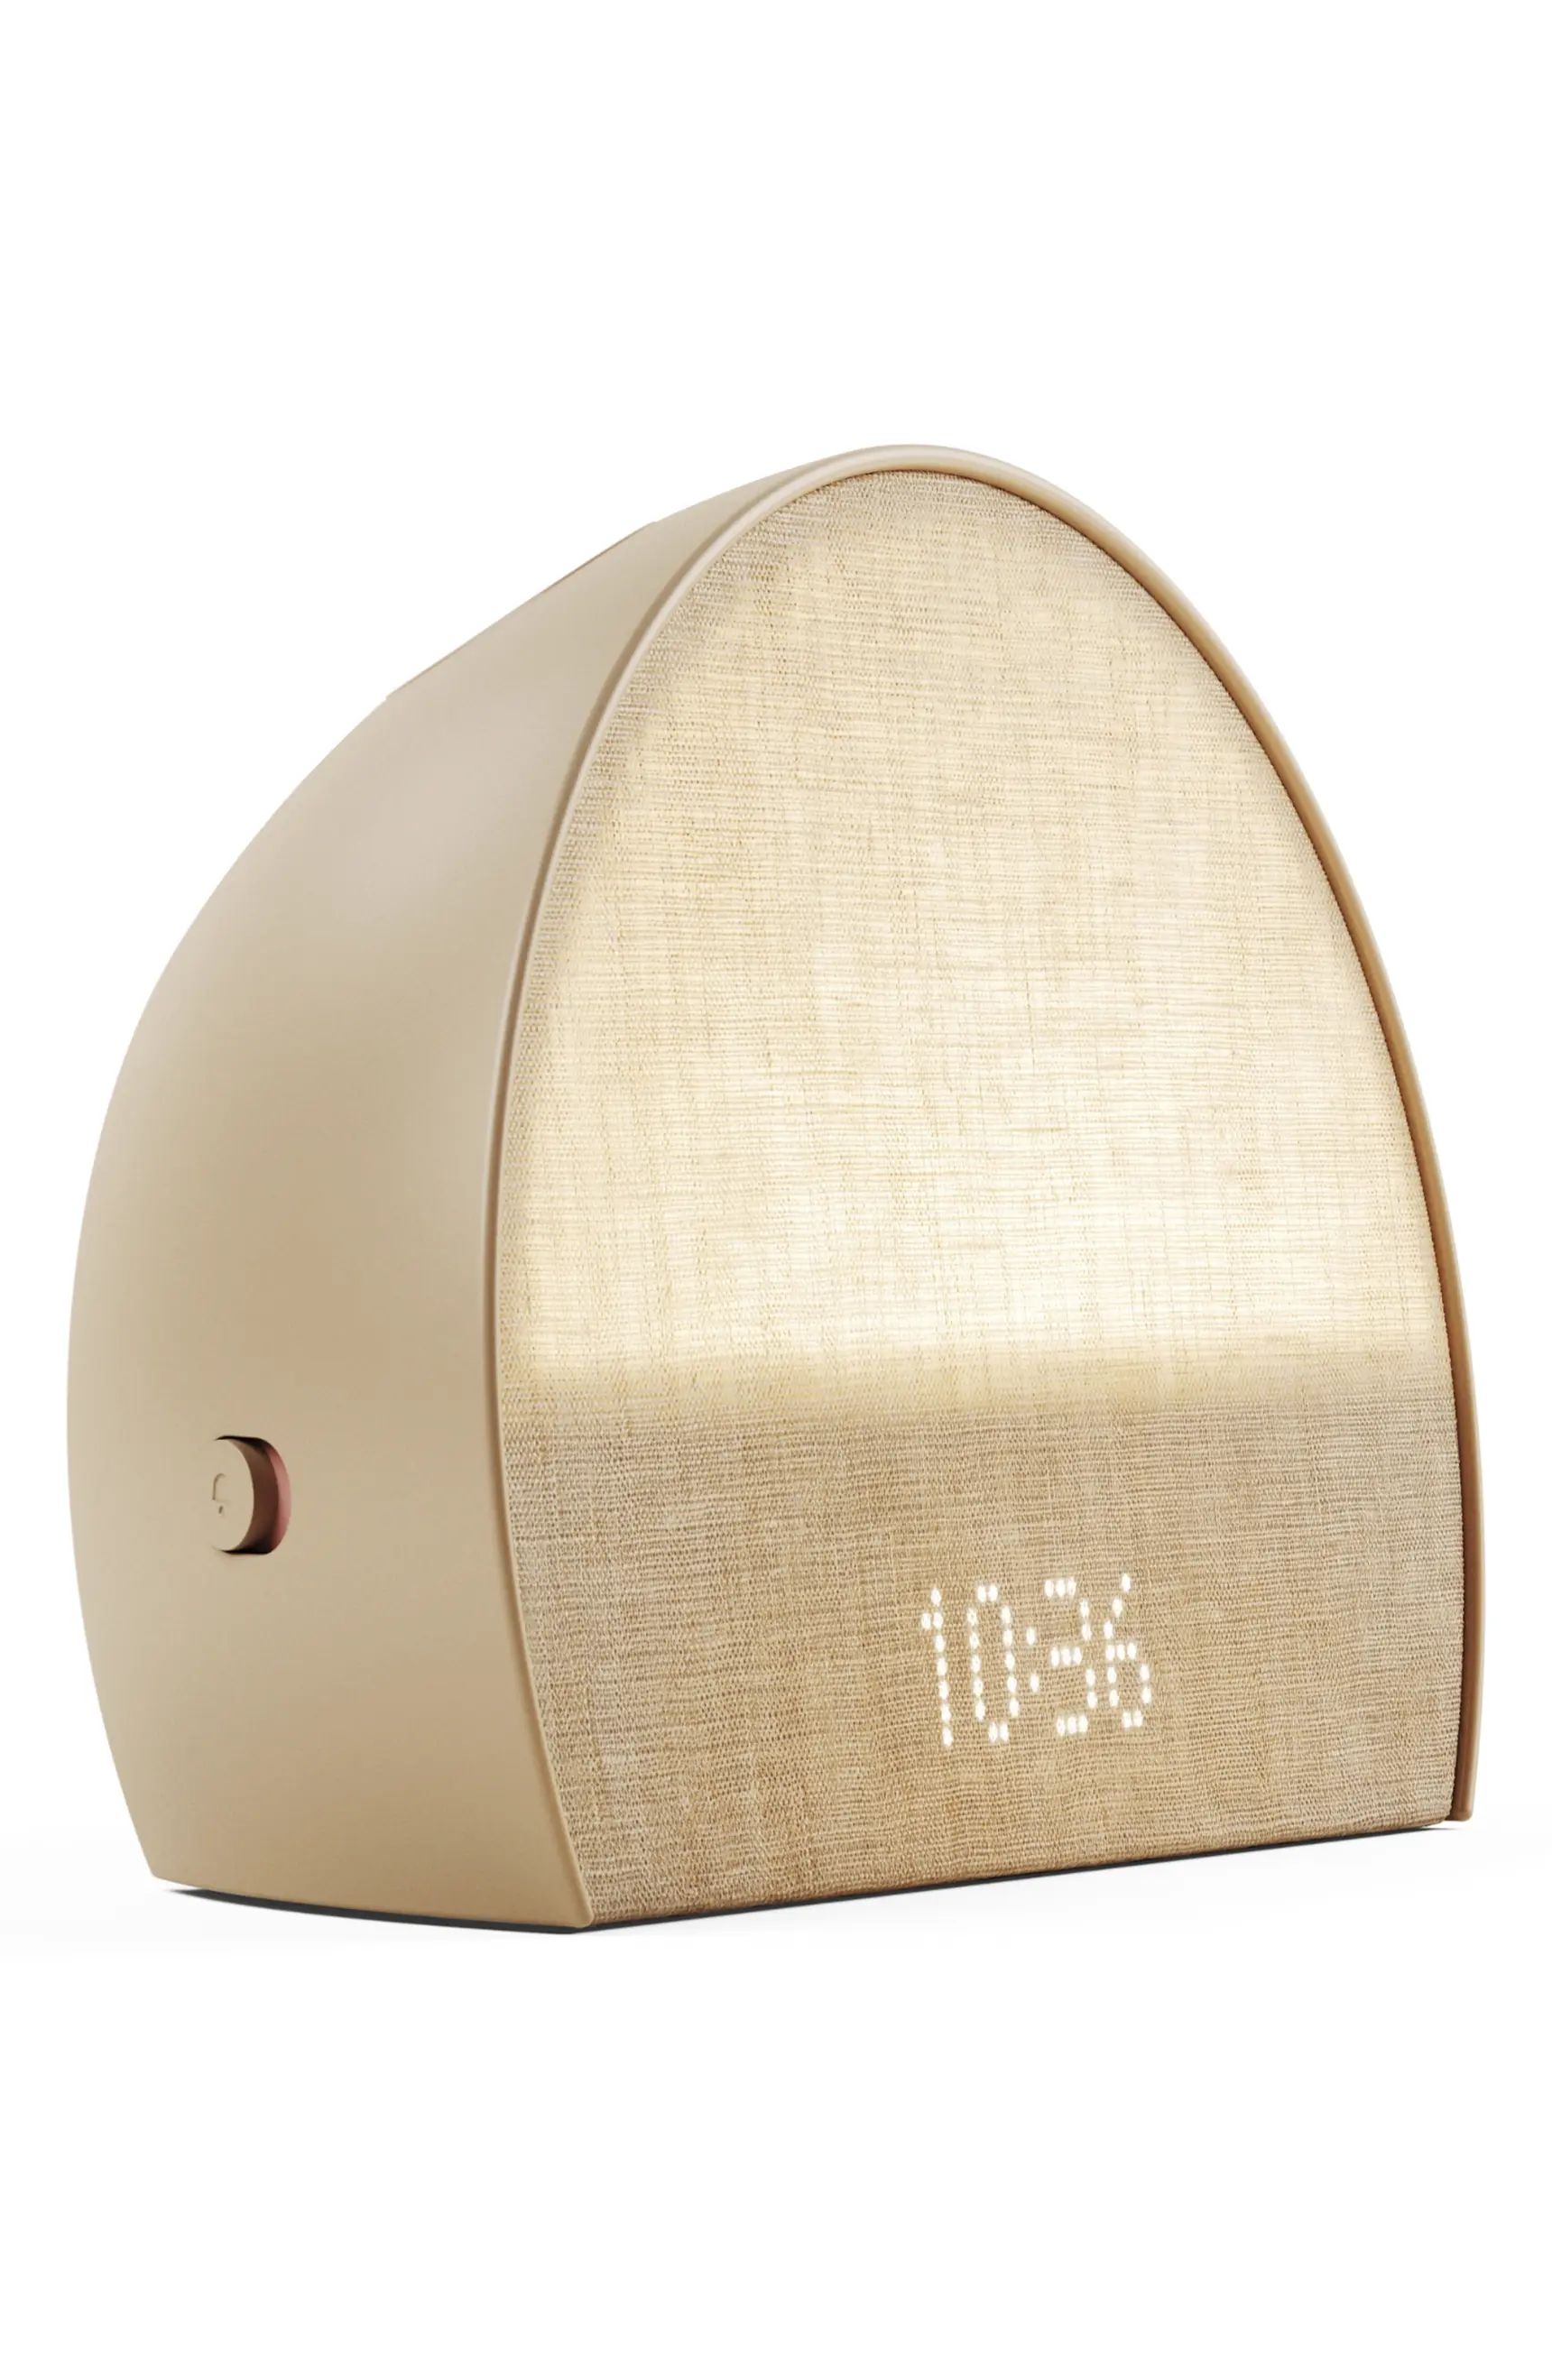 Hatch Inc Hatch Restore 2 Bedside Light, Sound Machine & Sunrise Alarm Clock | Nordstrom | Nordstrom